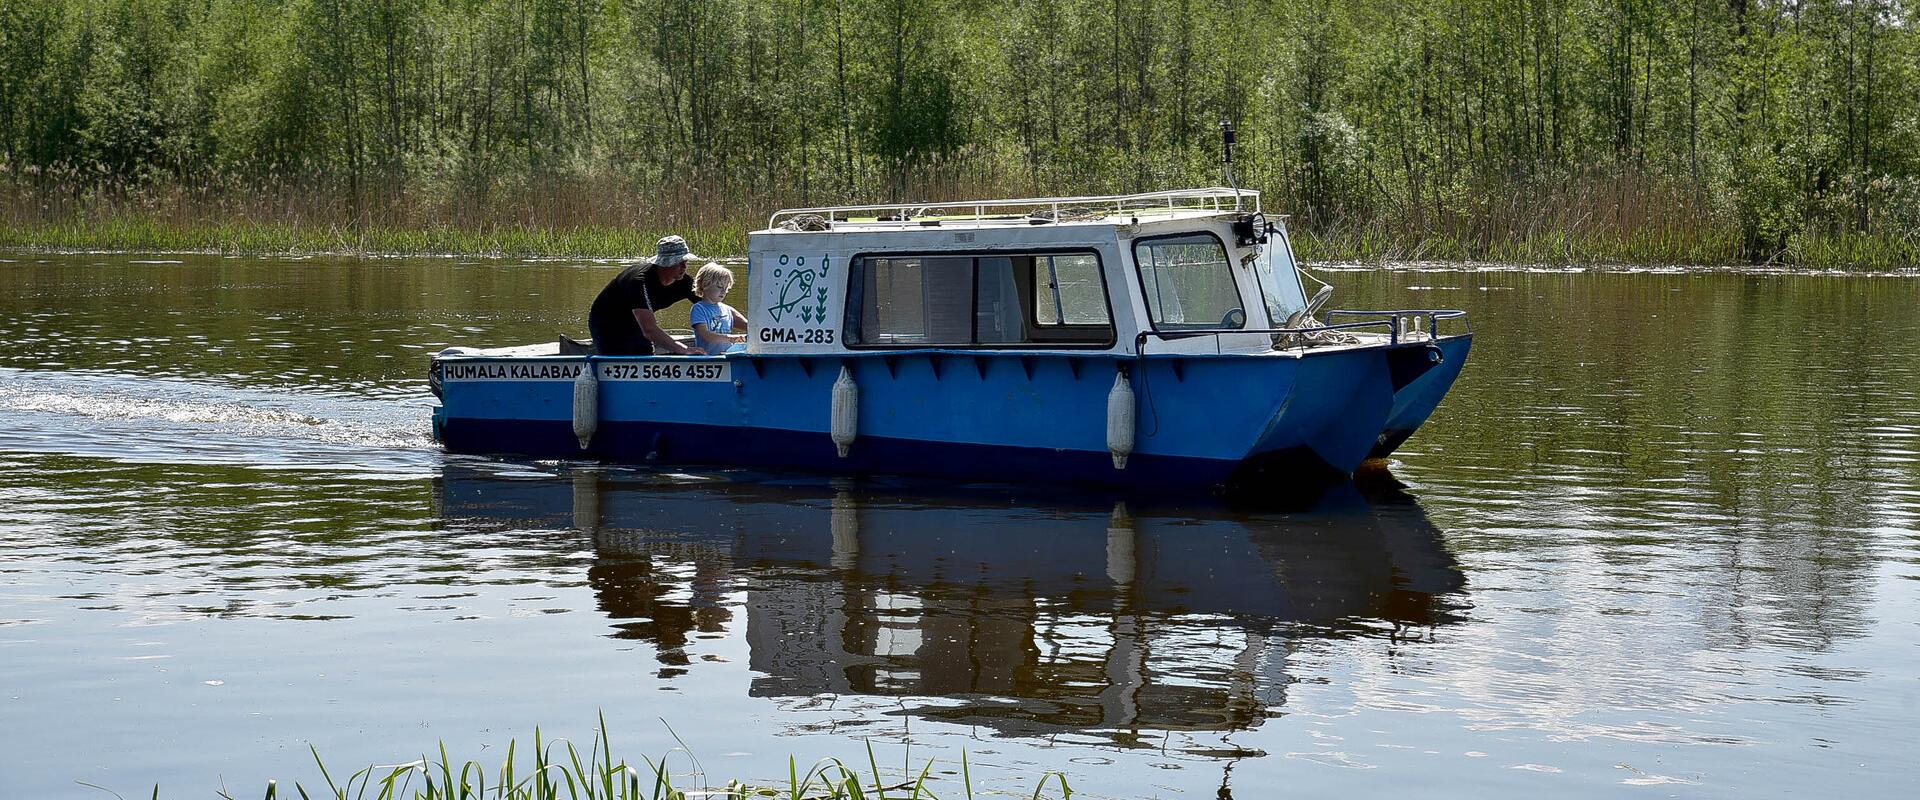 Unikāla laiva "Augupill" 6x2m, stabila, ar apsildāmu kajīti ceļošanai, makšķerēšanai un nakšņošanai